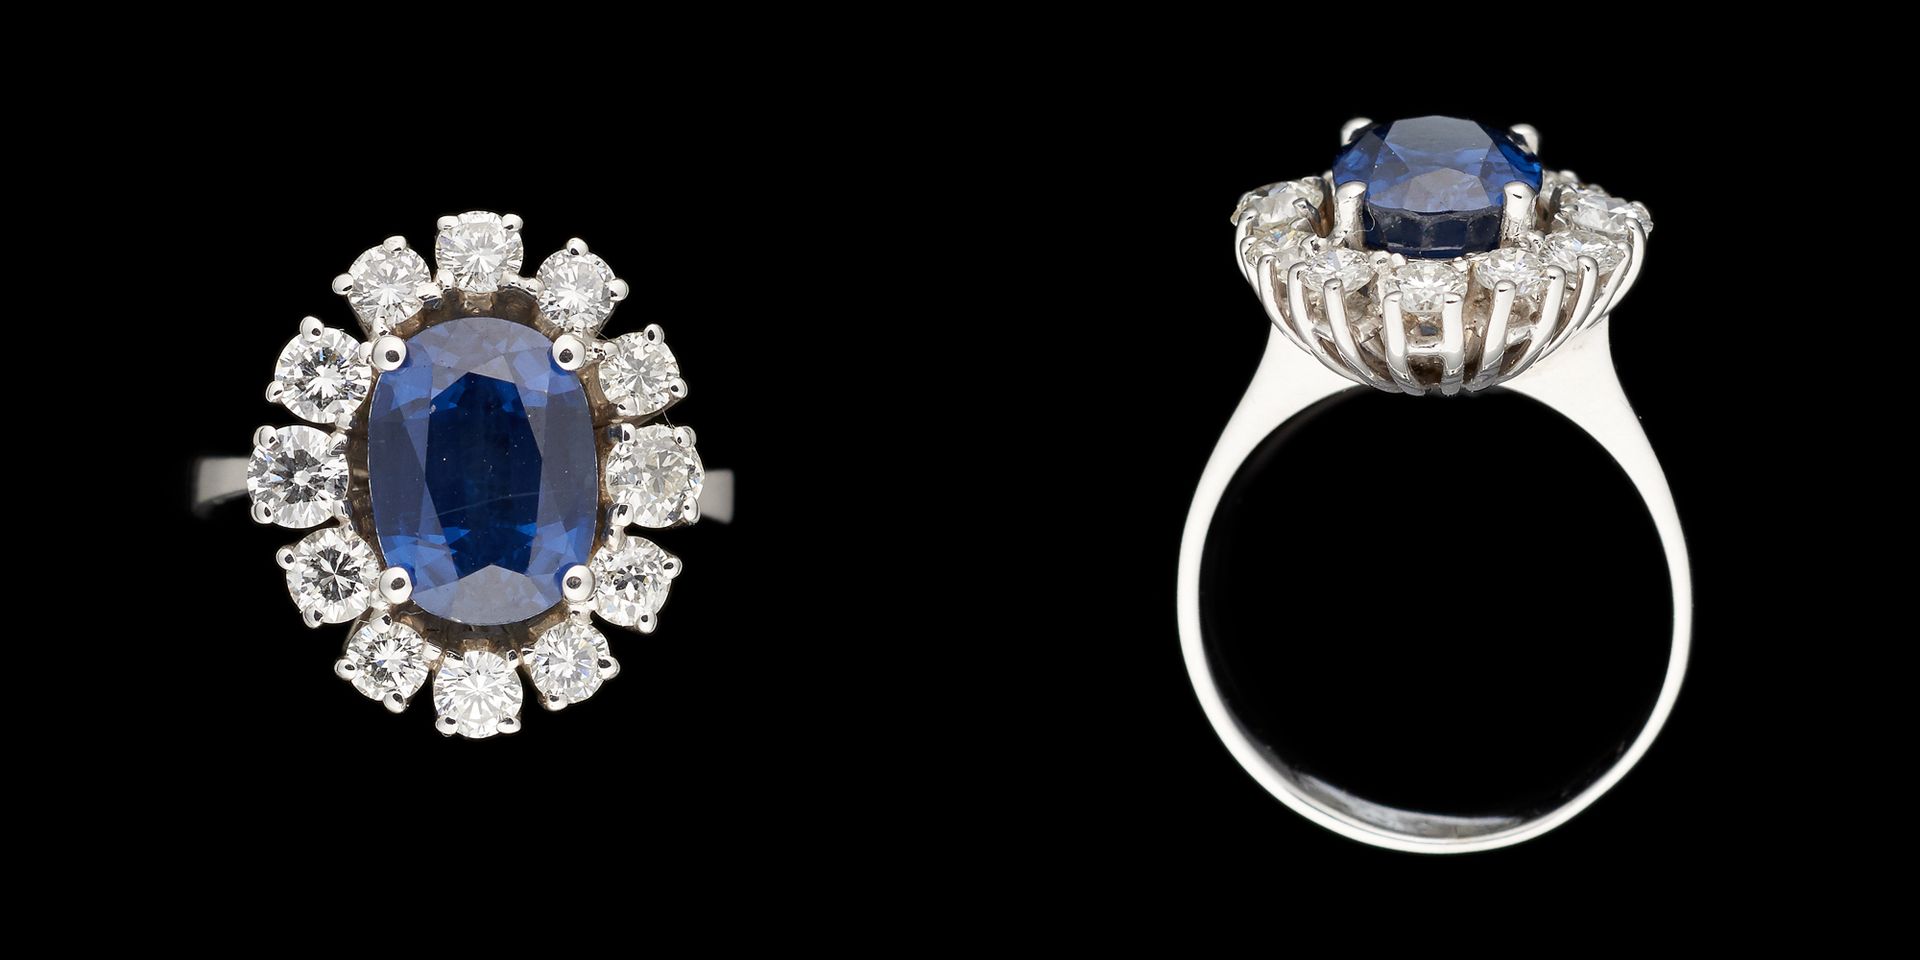 Joaillerie. 宝石：白金戒指，镶嵌了一颗+/-3.80克拉的蓝宝石和+/-1.40克拉的明亮式切割钻石。

手指大小：+/-56。